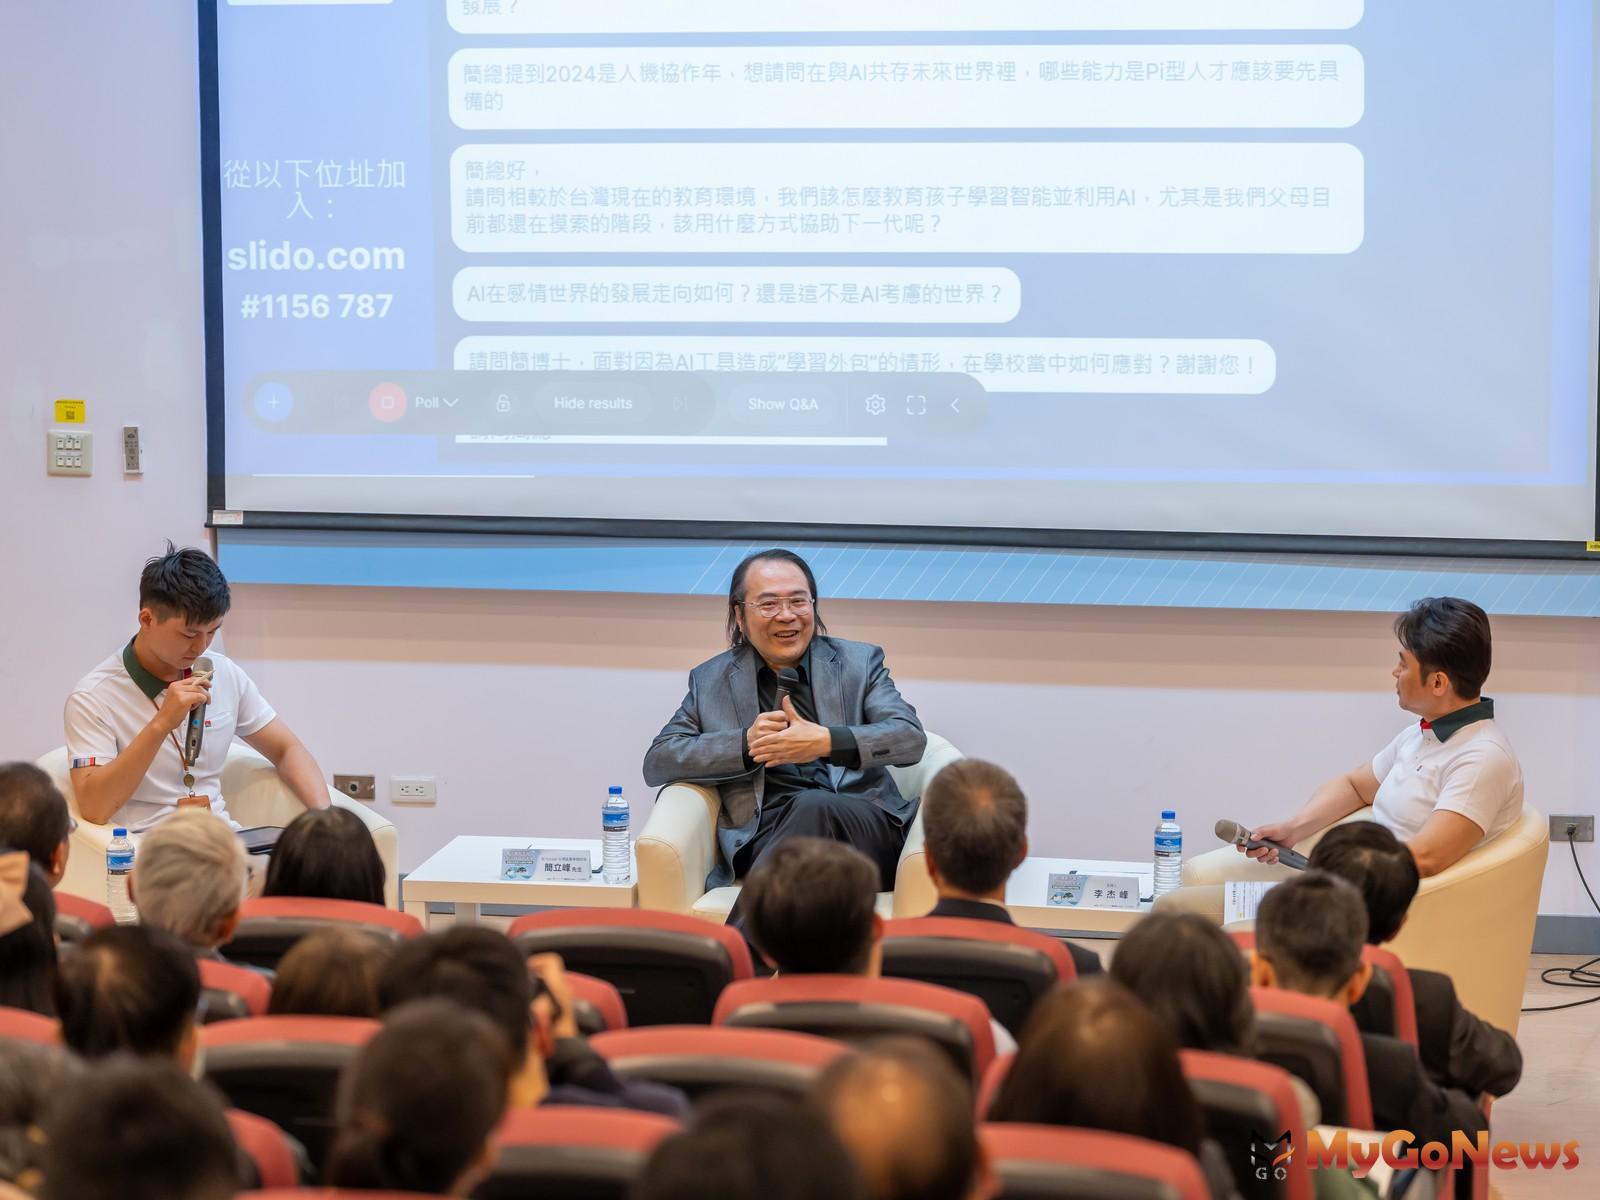 前Google台灣董事總經理簡立峰主講「未來人才：企業從數位轉型到AI賦能」並與信義主管互動(圖/信義房屋)  MyGoNews房地產新聞 市場快訊